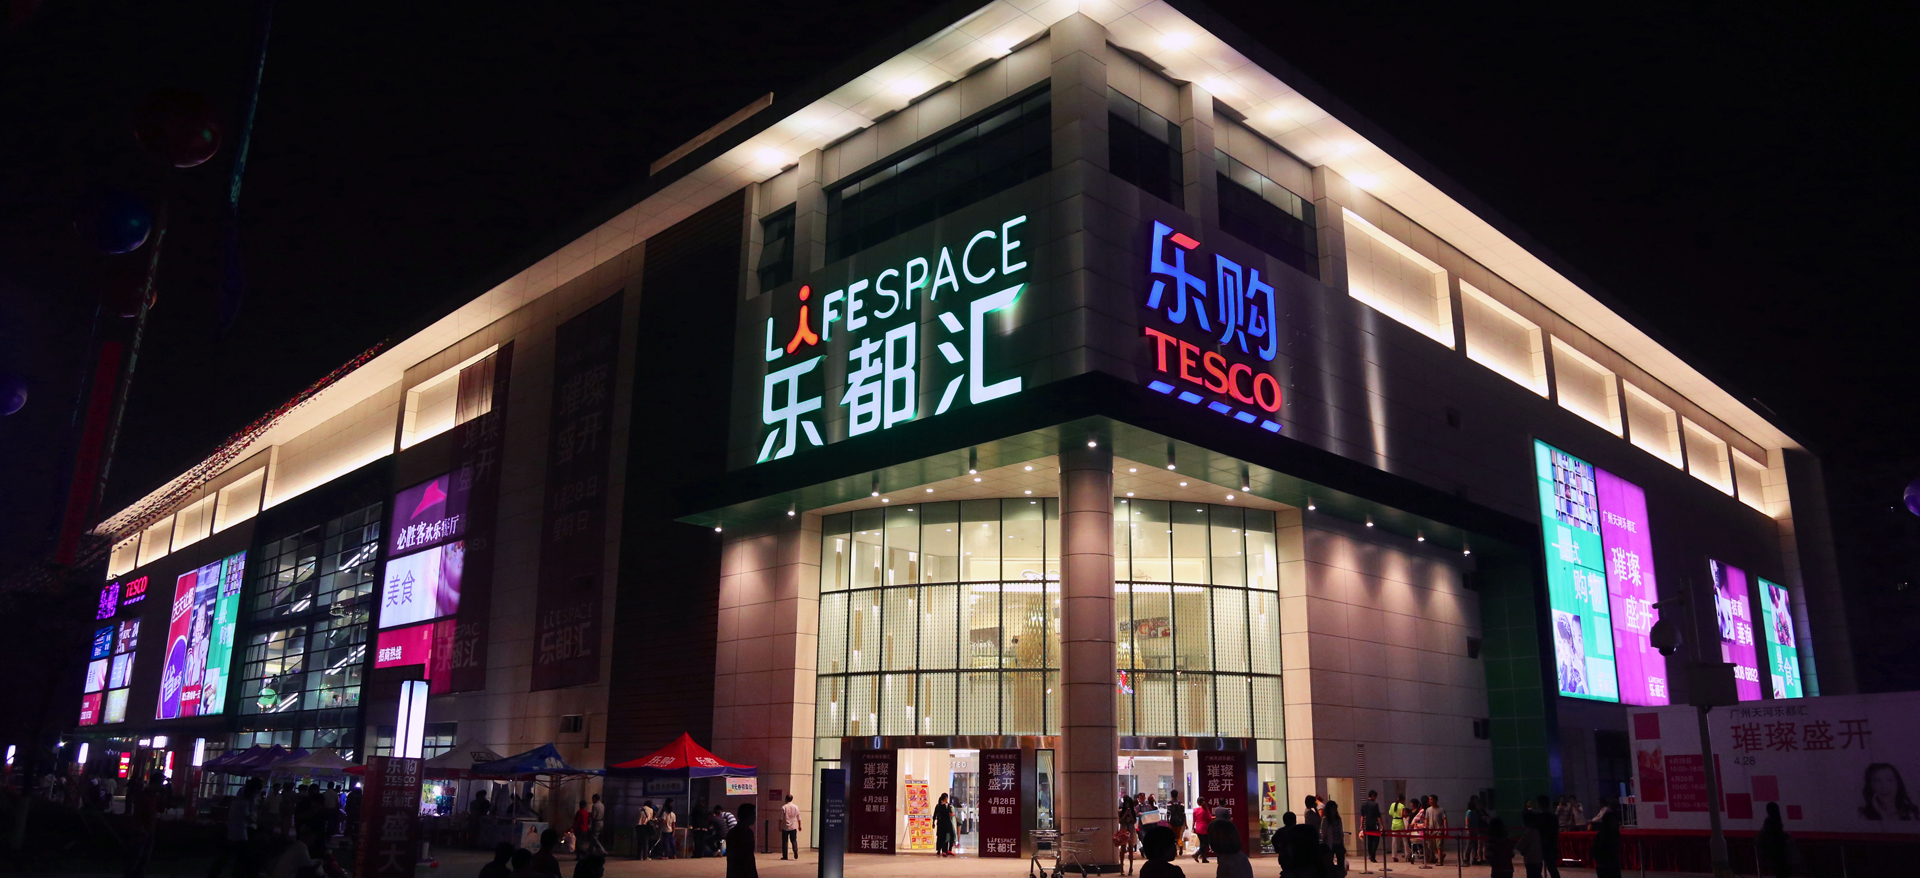 Guangzhou Lifespace Mall, Guangzhou, China